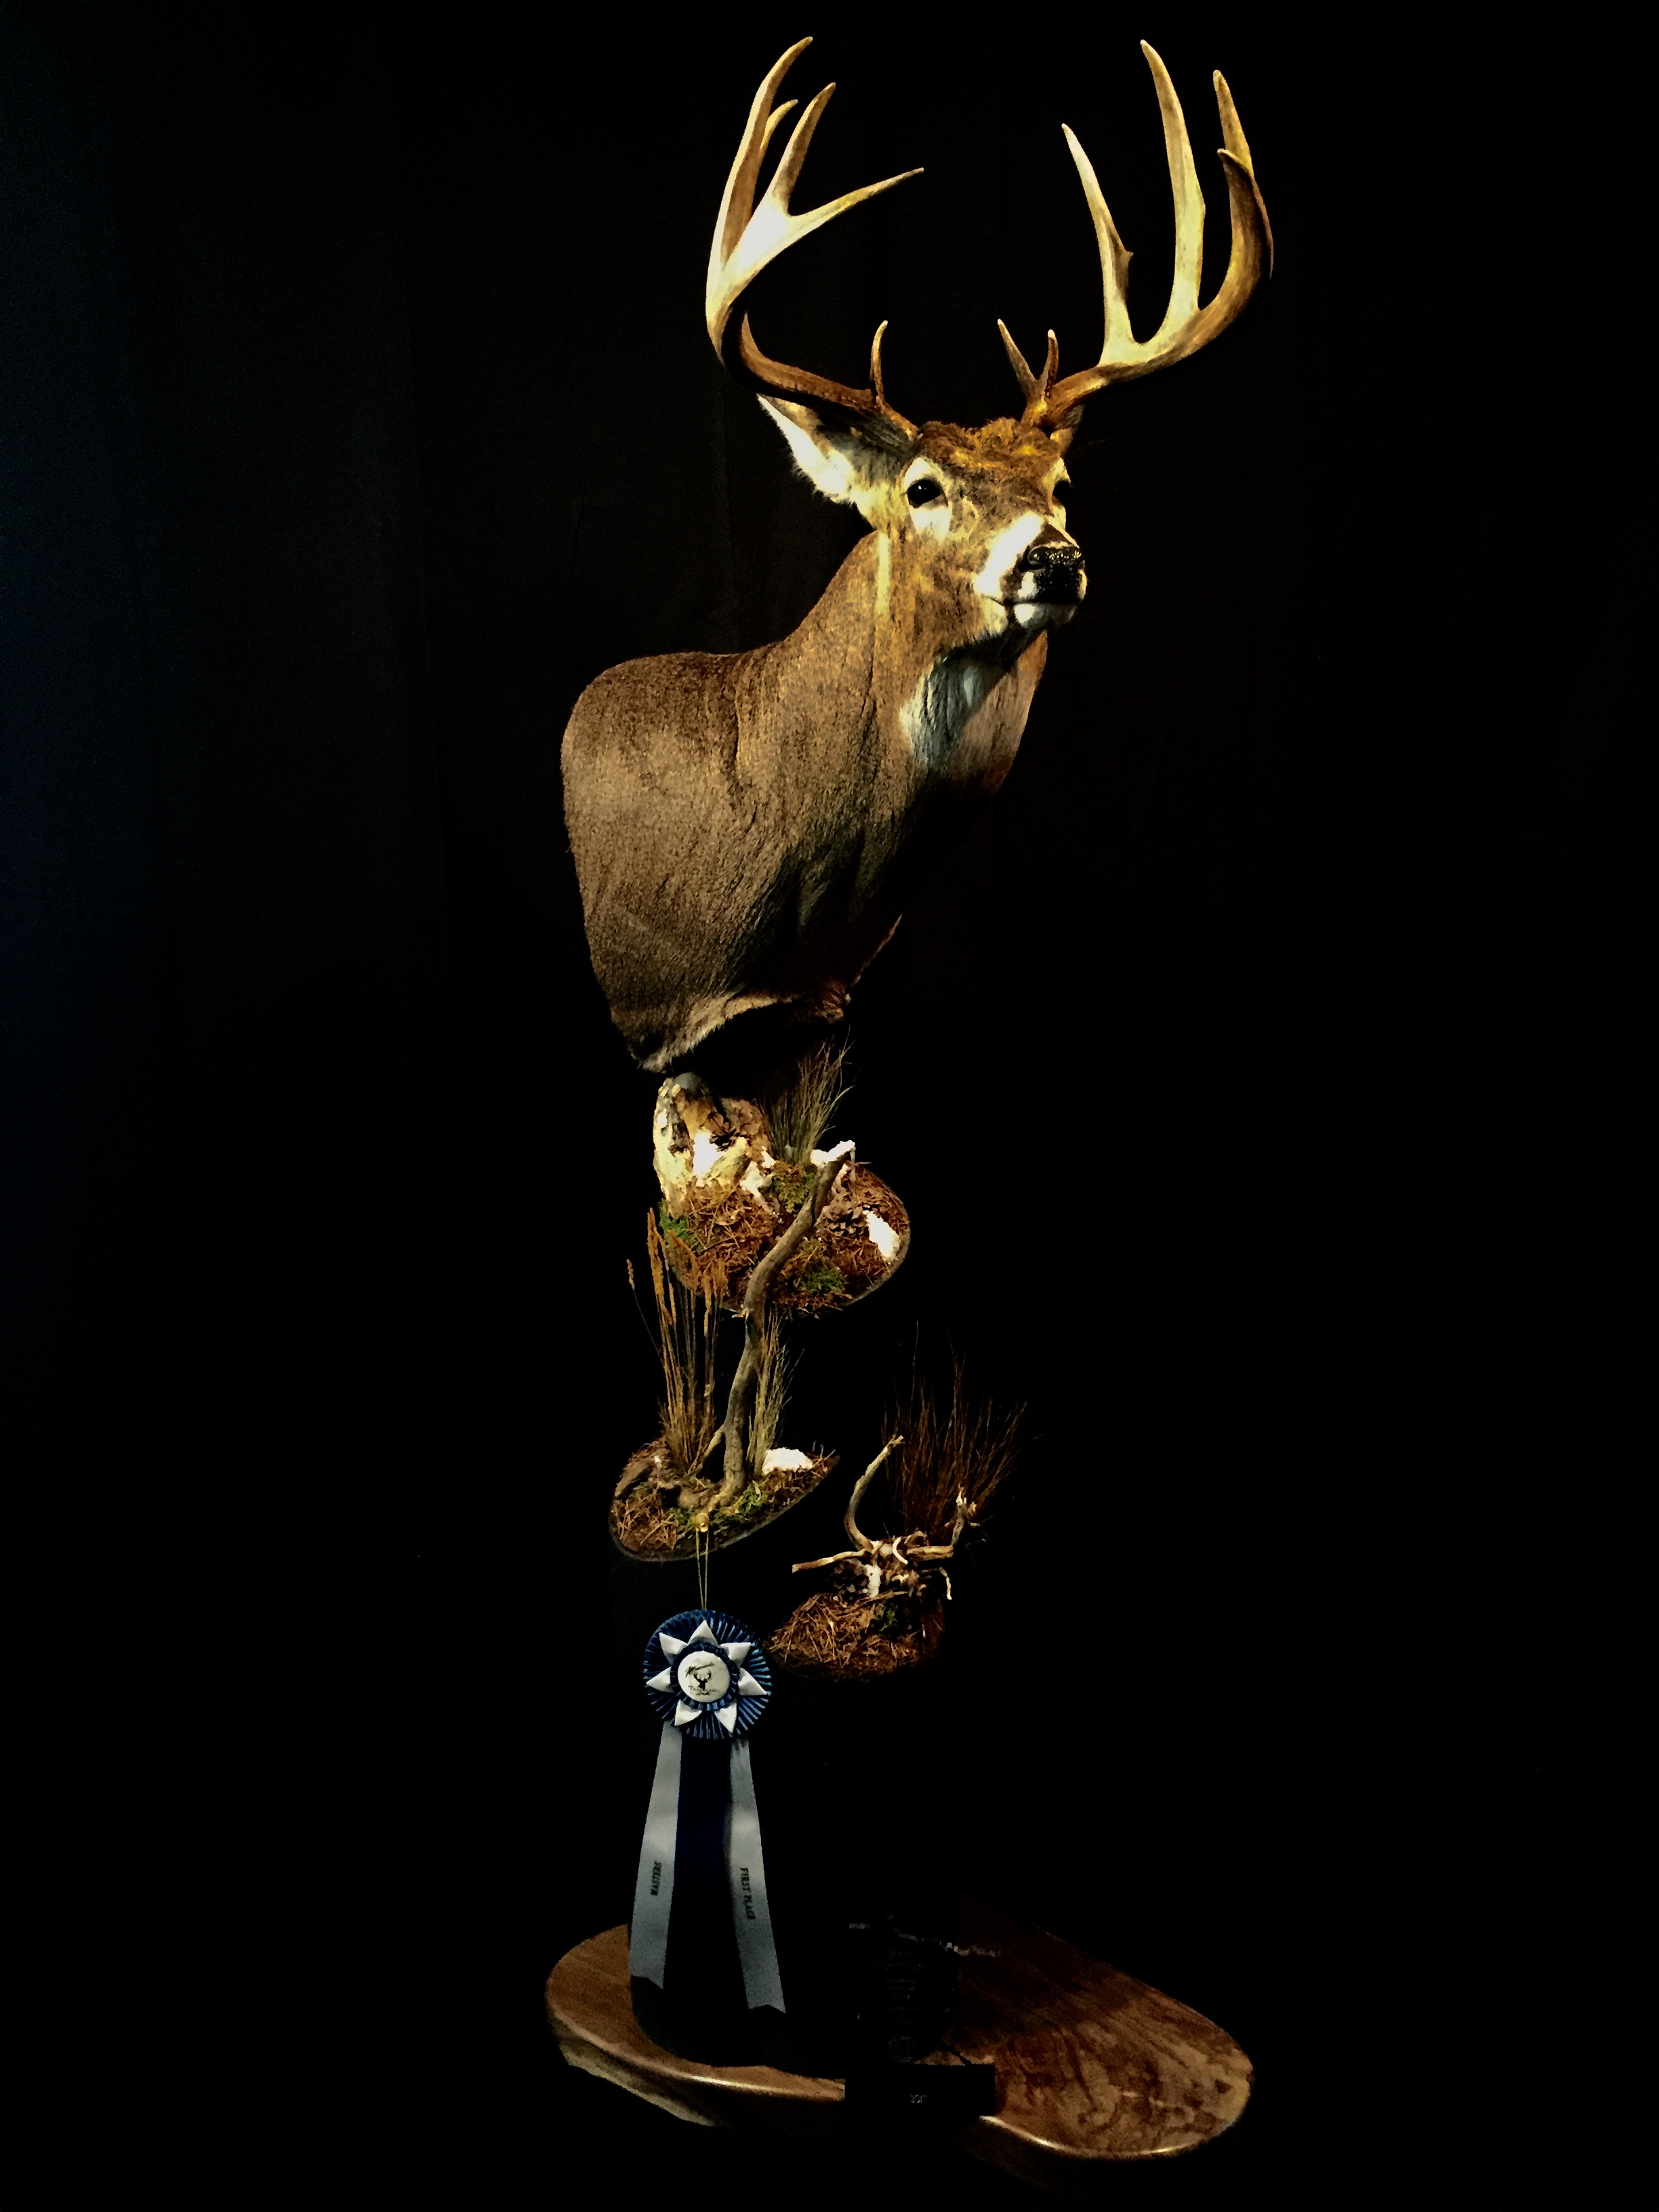 2017 State Champion Whitetail Deer